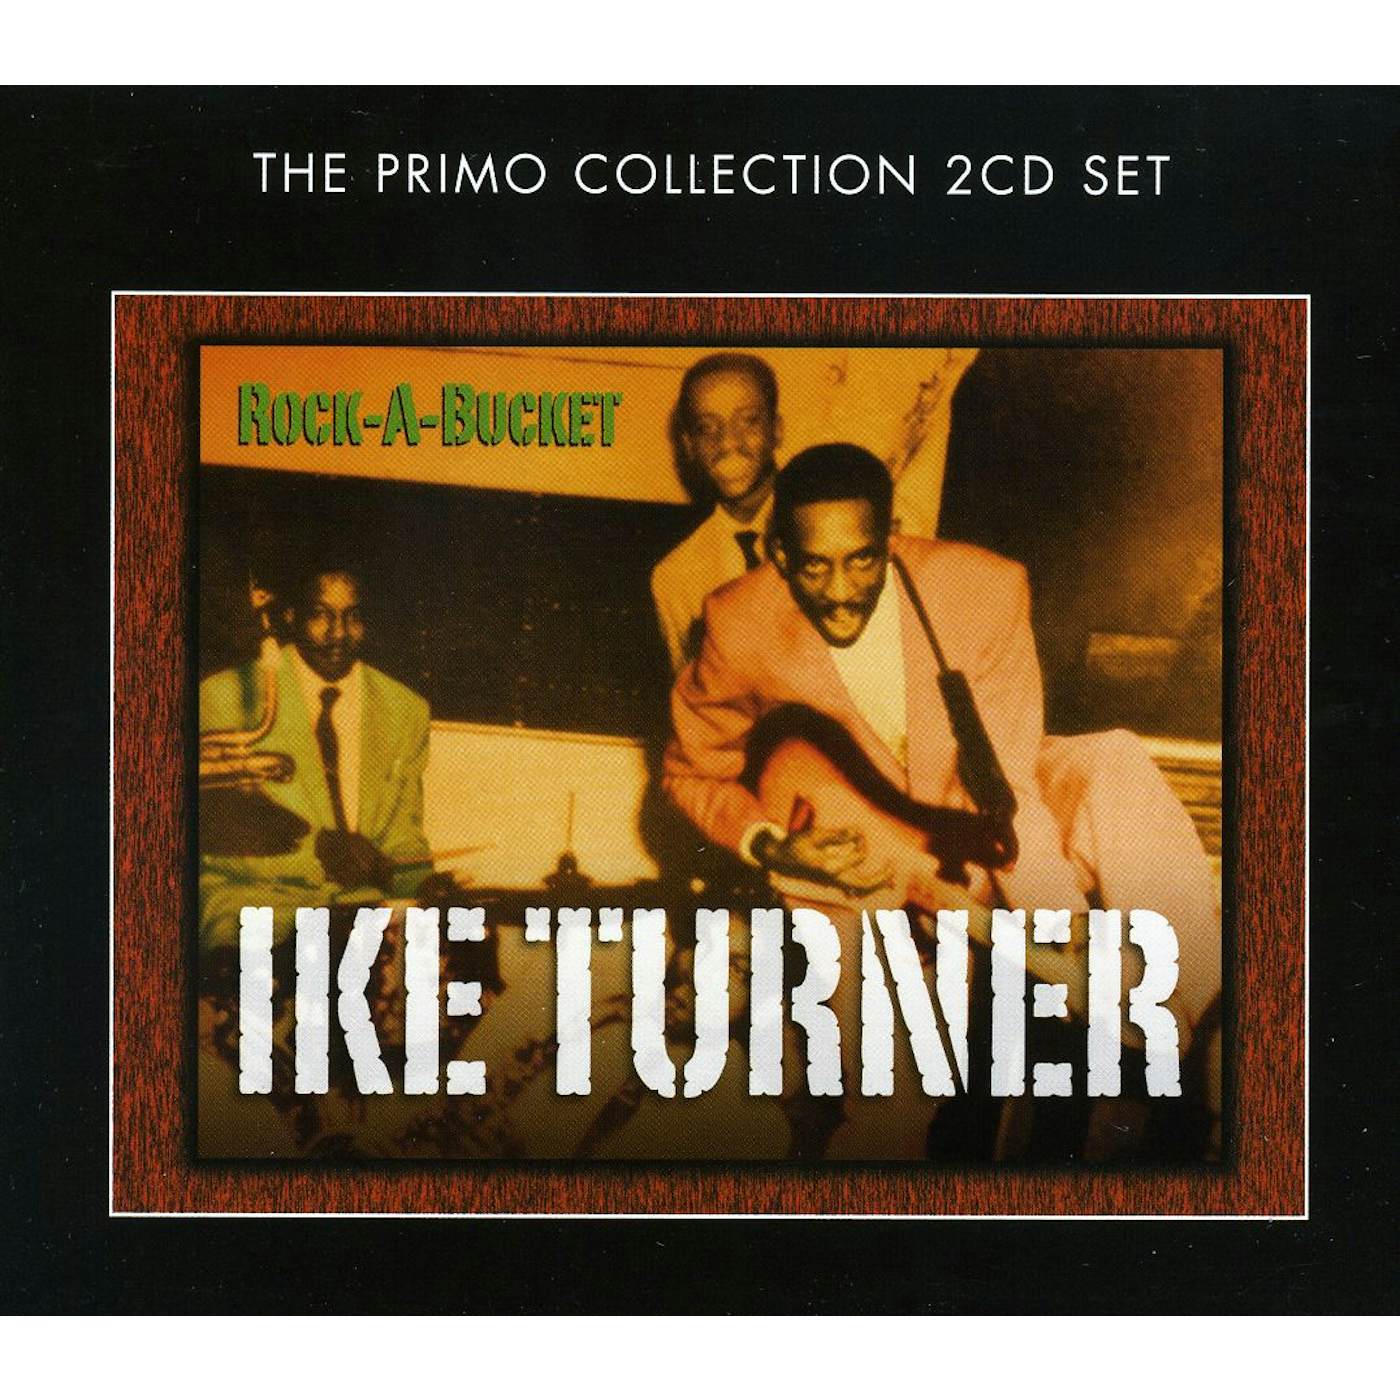 Ike Turner ROCK A BUCKET CD